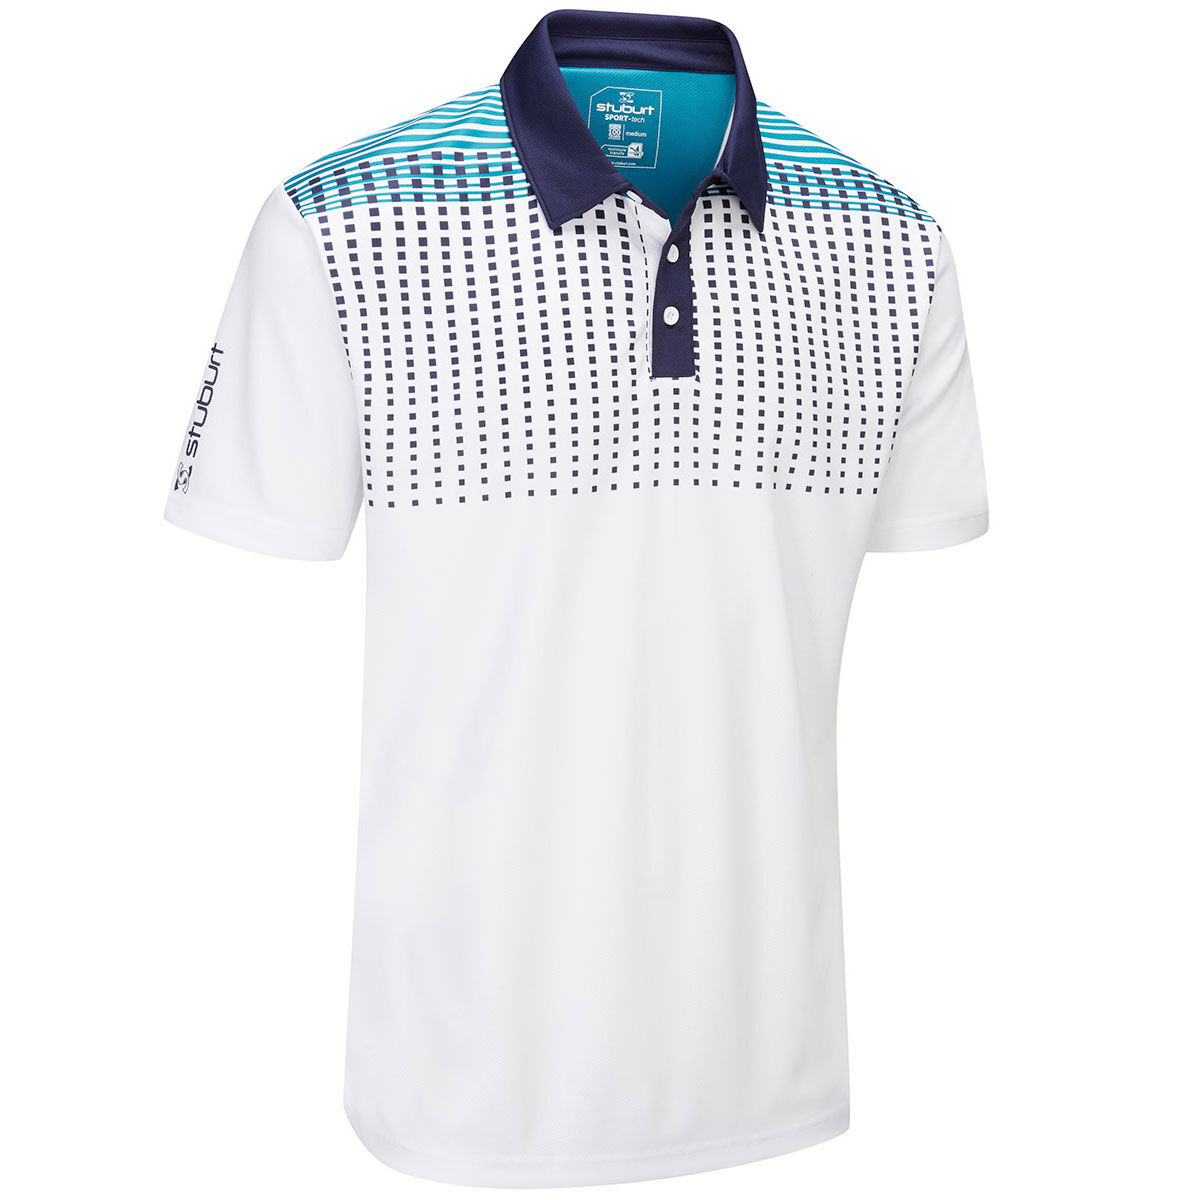 Polo Stuburt Sport-Tech Whixley, homme, Petit, Blanc/Bleu nuit | Online Golf